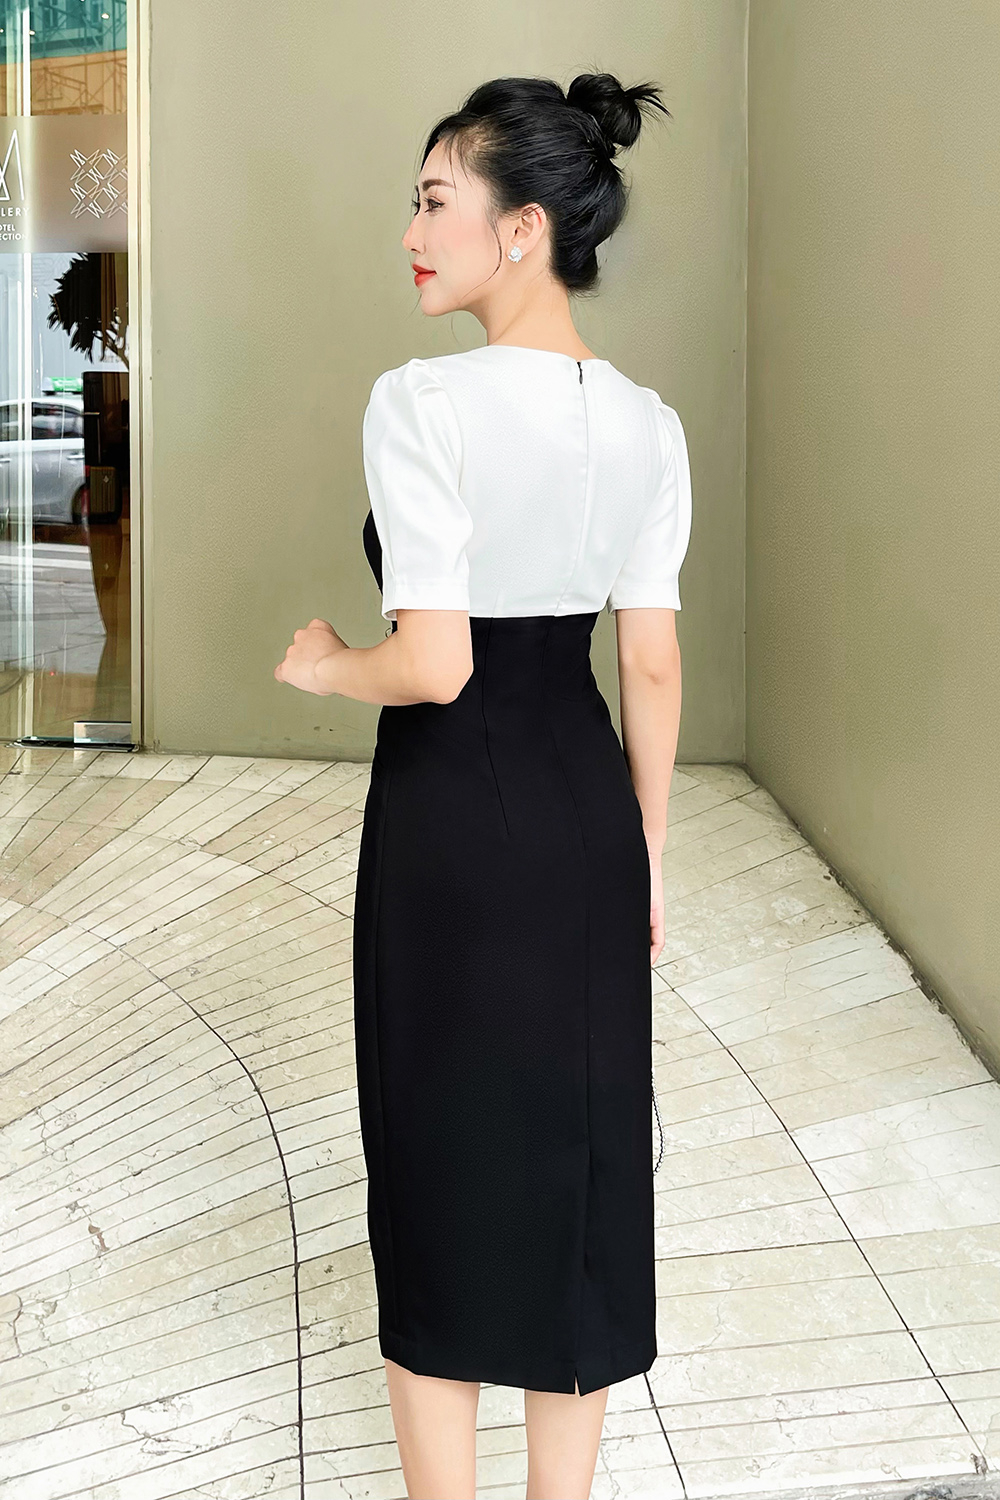 Korean Wind - Ulzzang Fashion - Chân váy xòe đen viền trắng style nữ sinh  cực xinh và dễ phối đồ. Chân váy có lớp lót , lưng thun dễ mặc, có